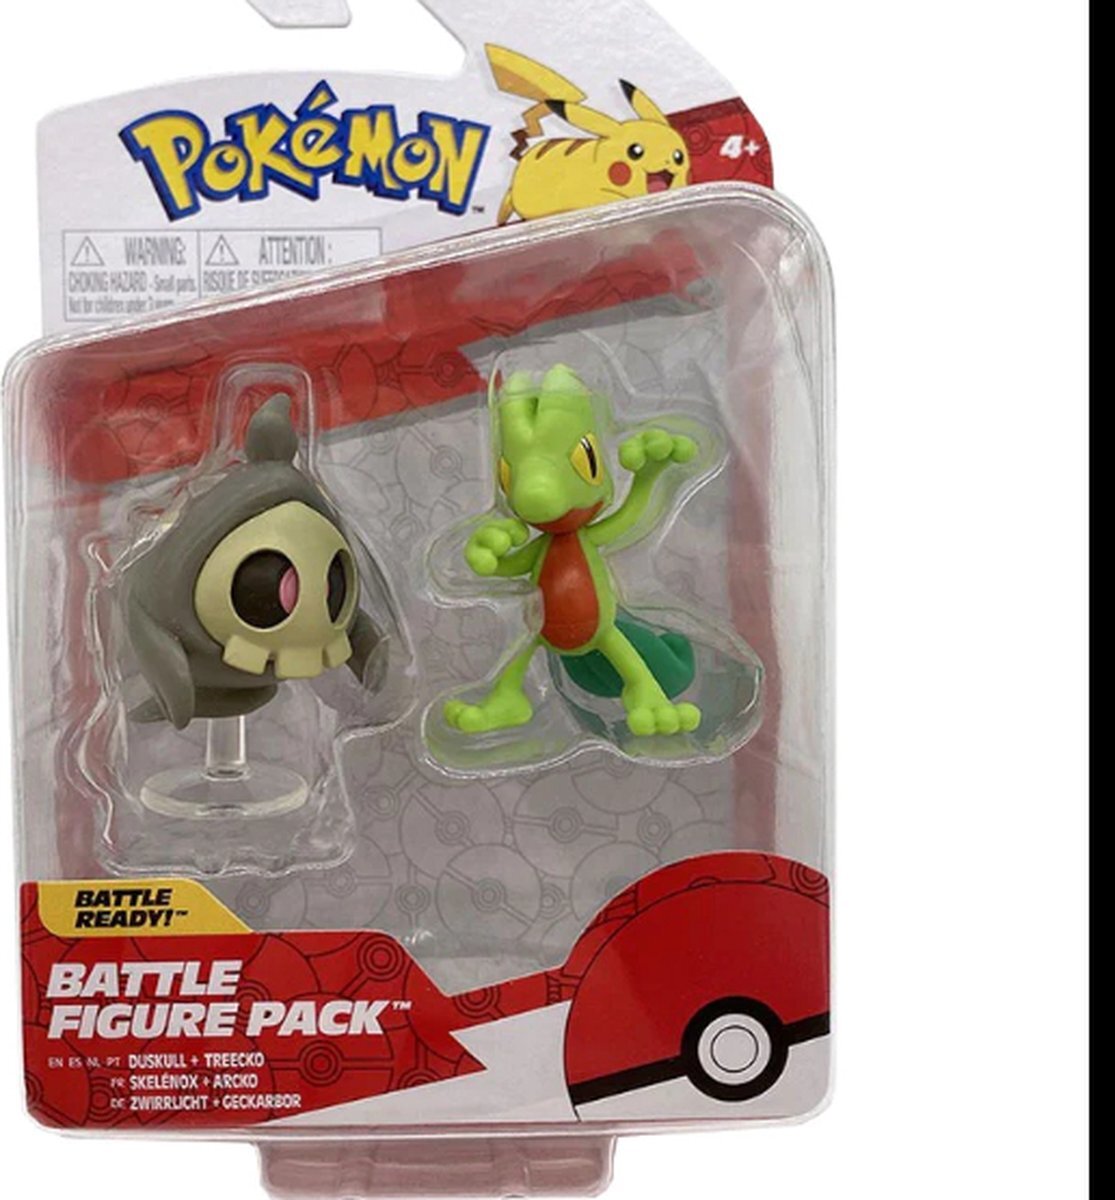 Pokémon Pokemon Battle Figure Pack - Treecko & Duskull